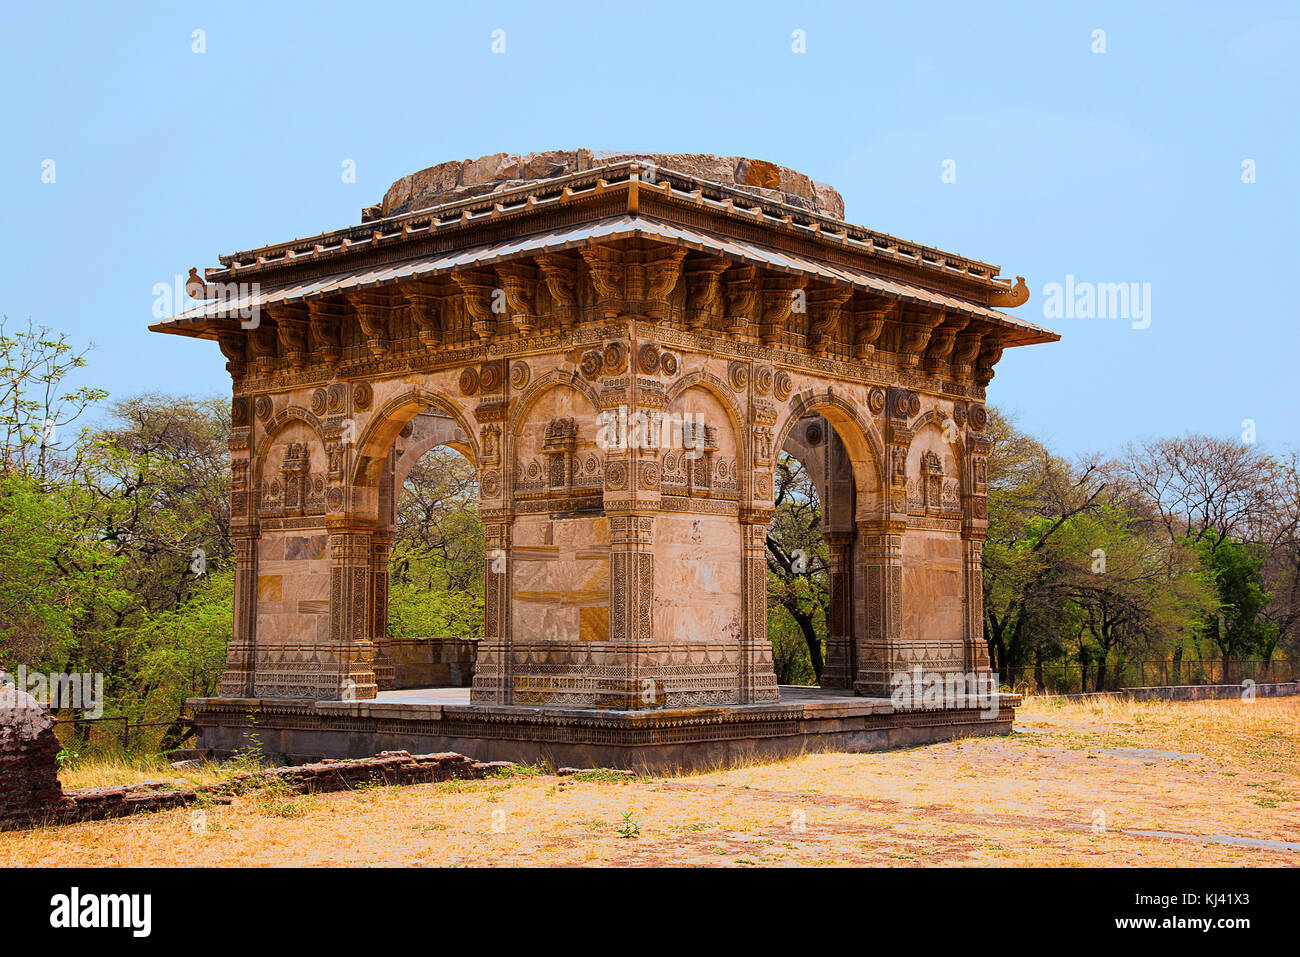 Teilansicht einer Kuppel in der Nähe von Nagina Masjid (Moschee), mit reinem weißen Stein gebaut, UNESCO-geschützten Champaner - Pavagadh Archäologischen Park, Gujarat, I Stockfoto